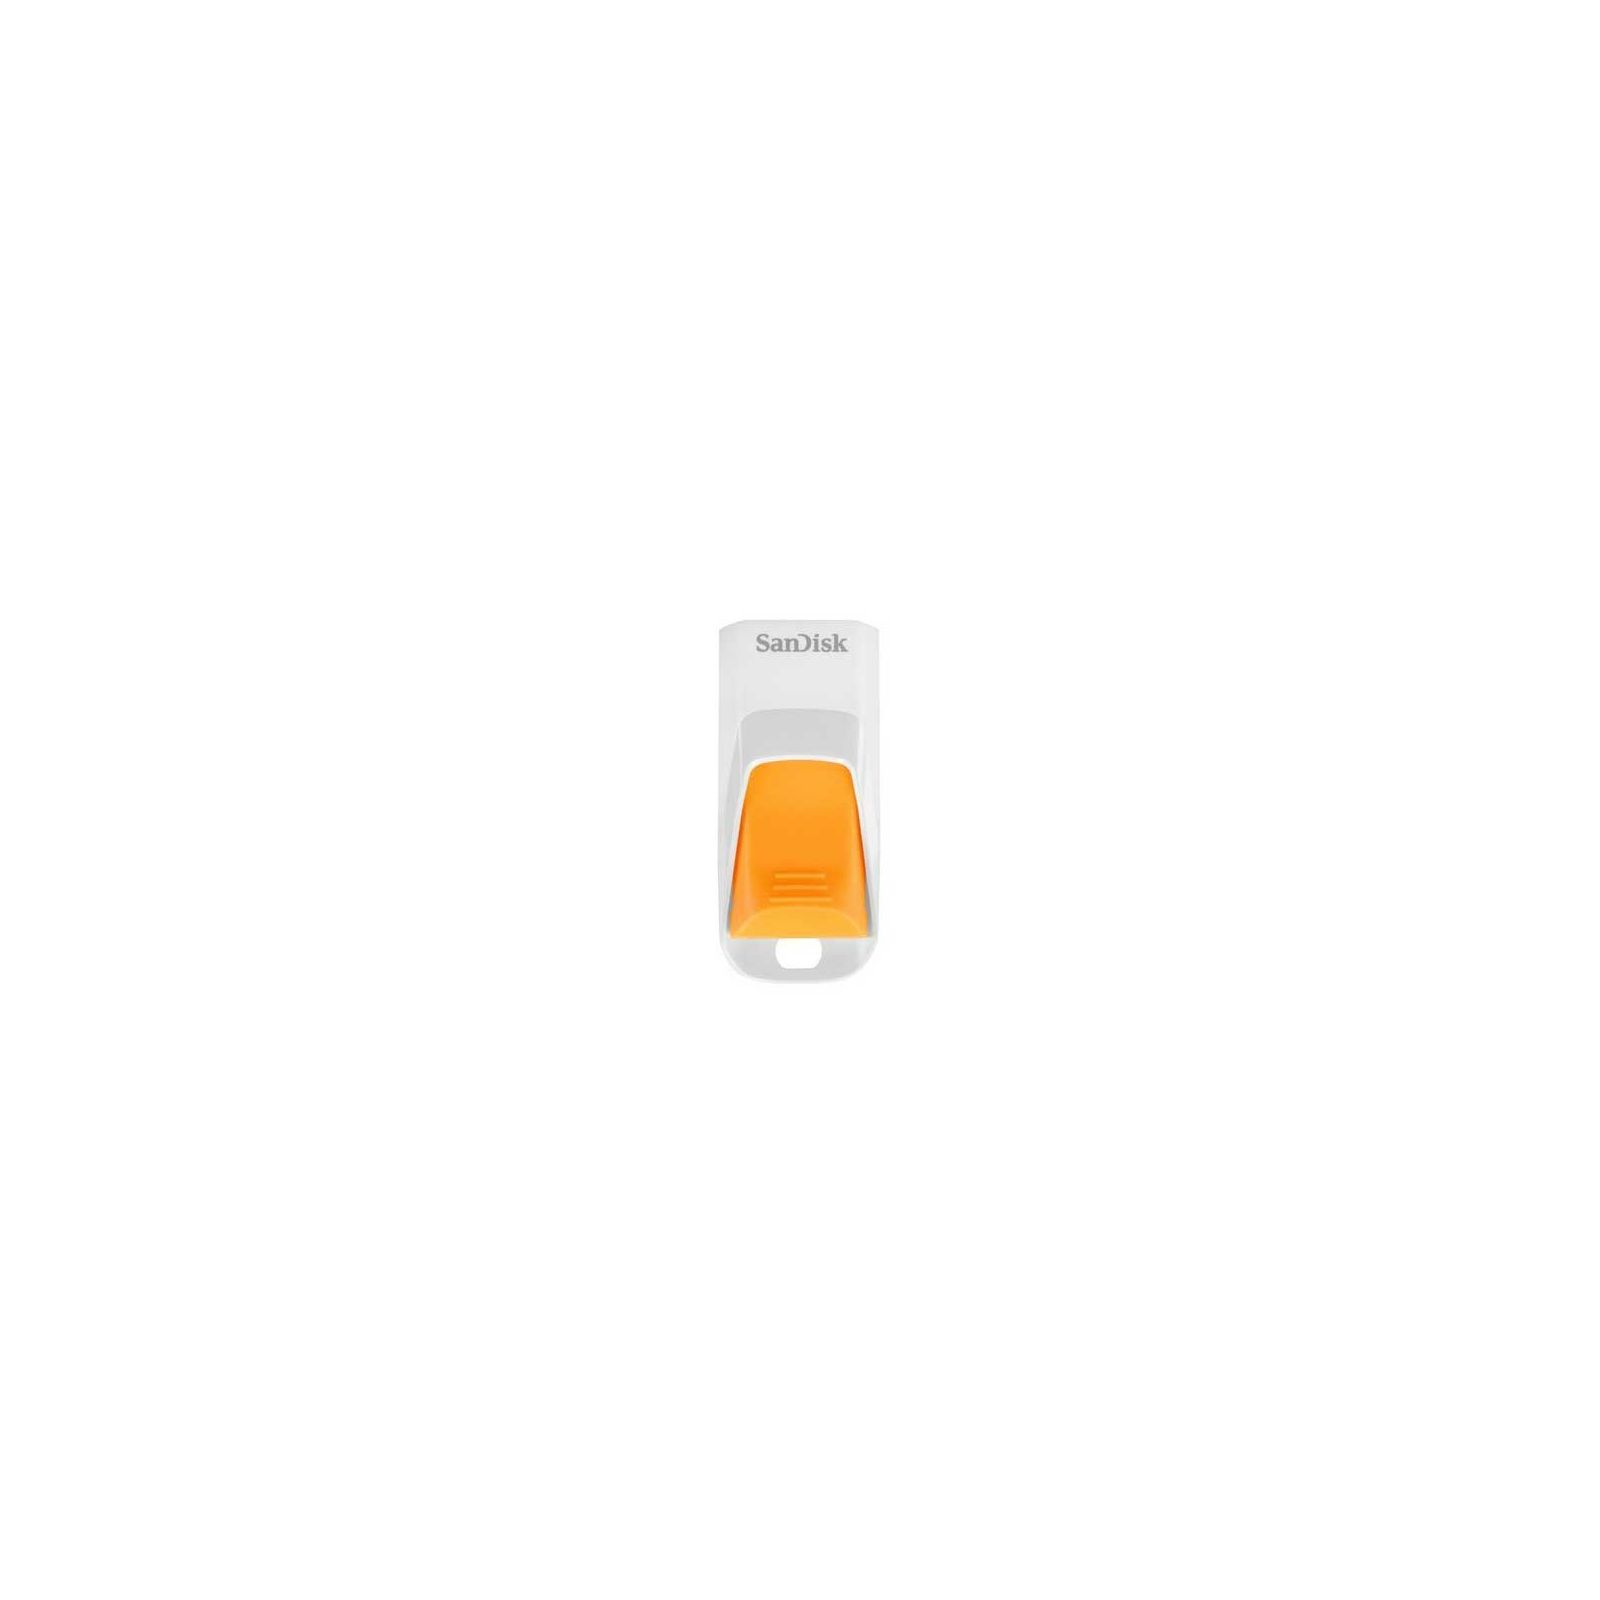 SanDisk Cruzer Edge 32GB Whie/Orange SDCZ51W-032G-B35O USB Memory Stick